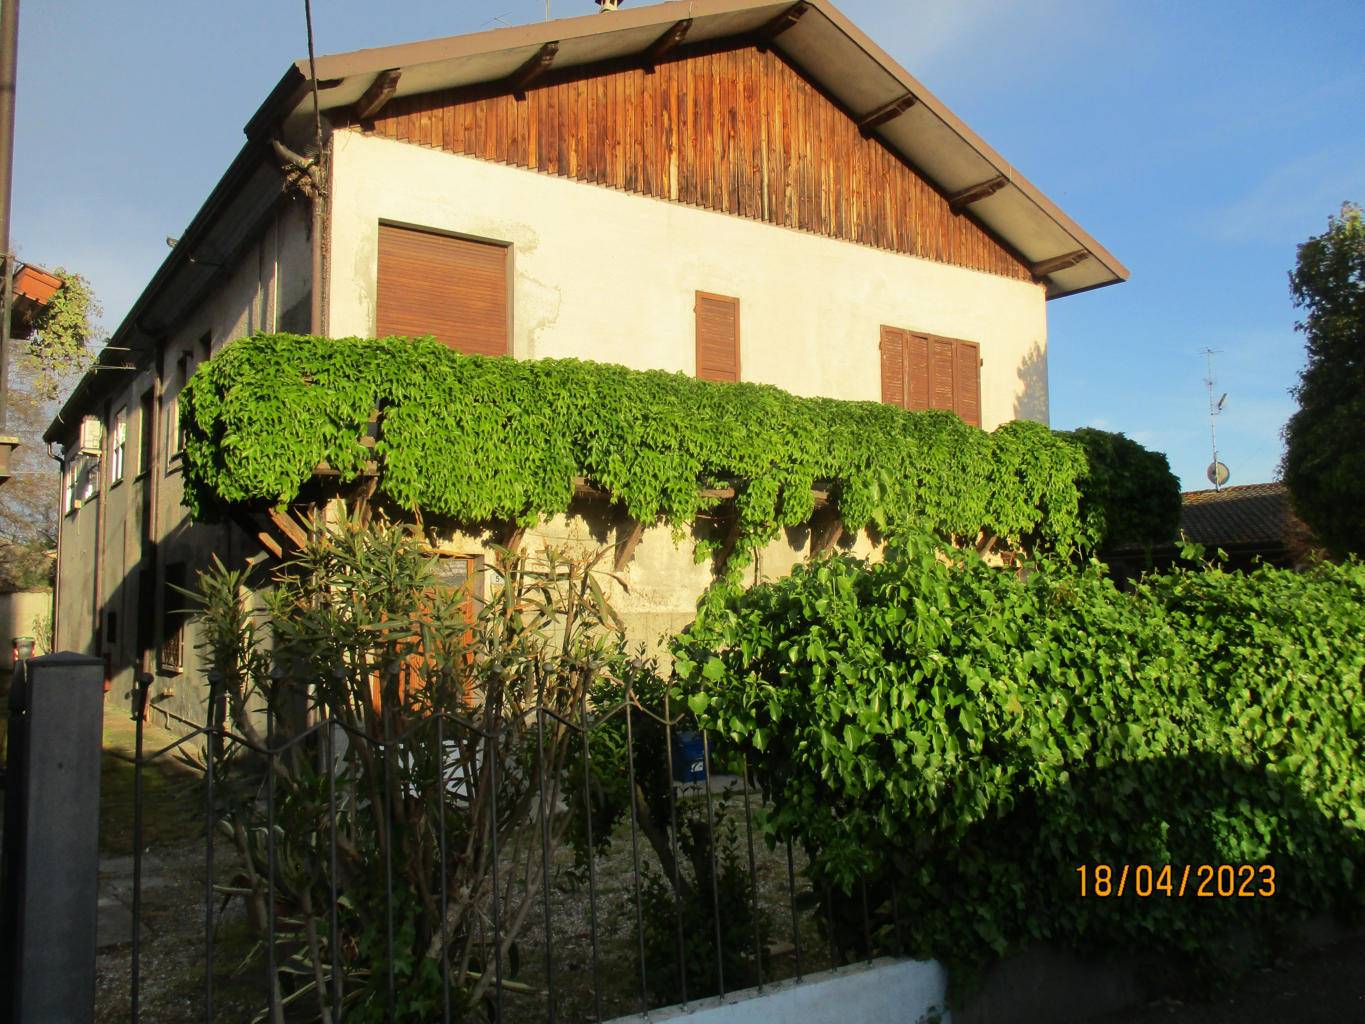 Villa Bifamiliare in vendita a Ostellato, 7 locali, prezzo € 103.000 | PortaleAgenzieImmobiliari.it